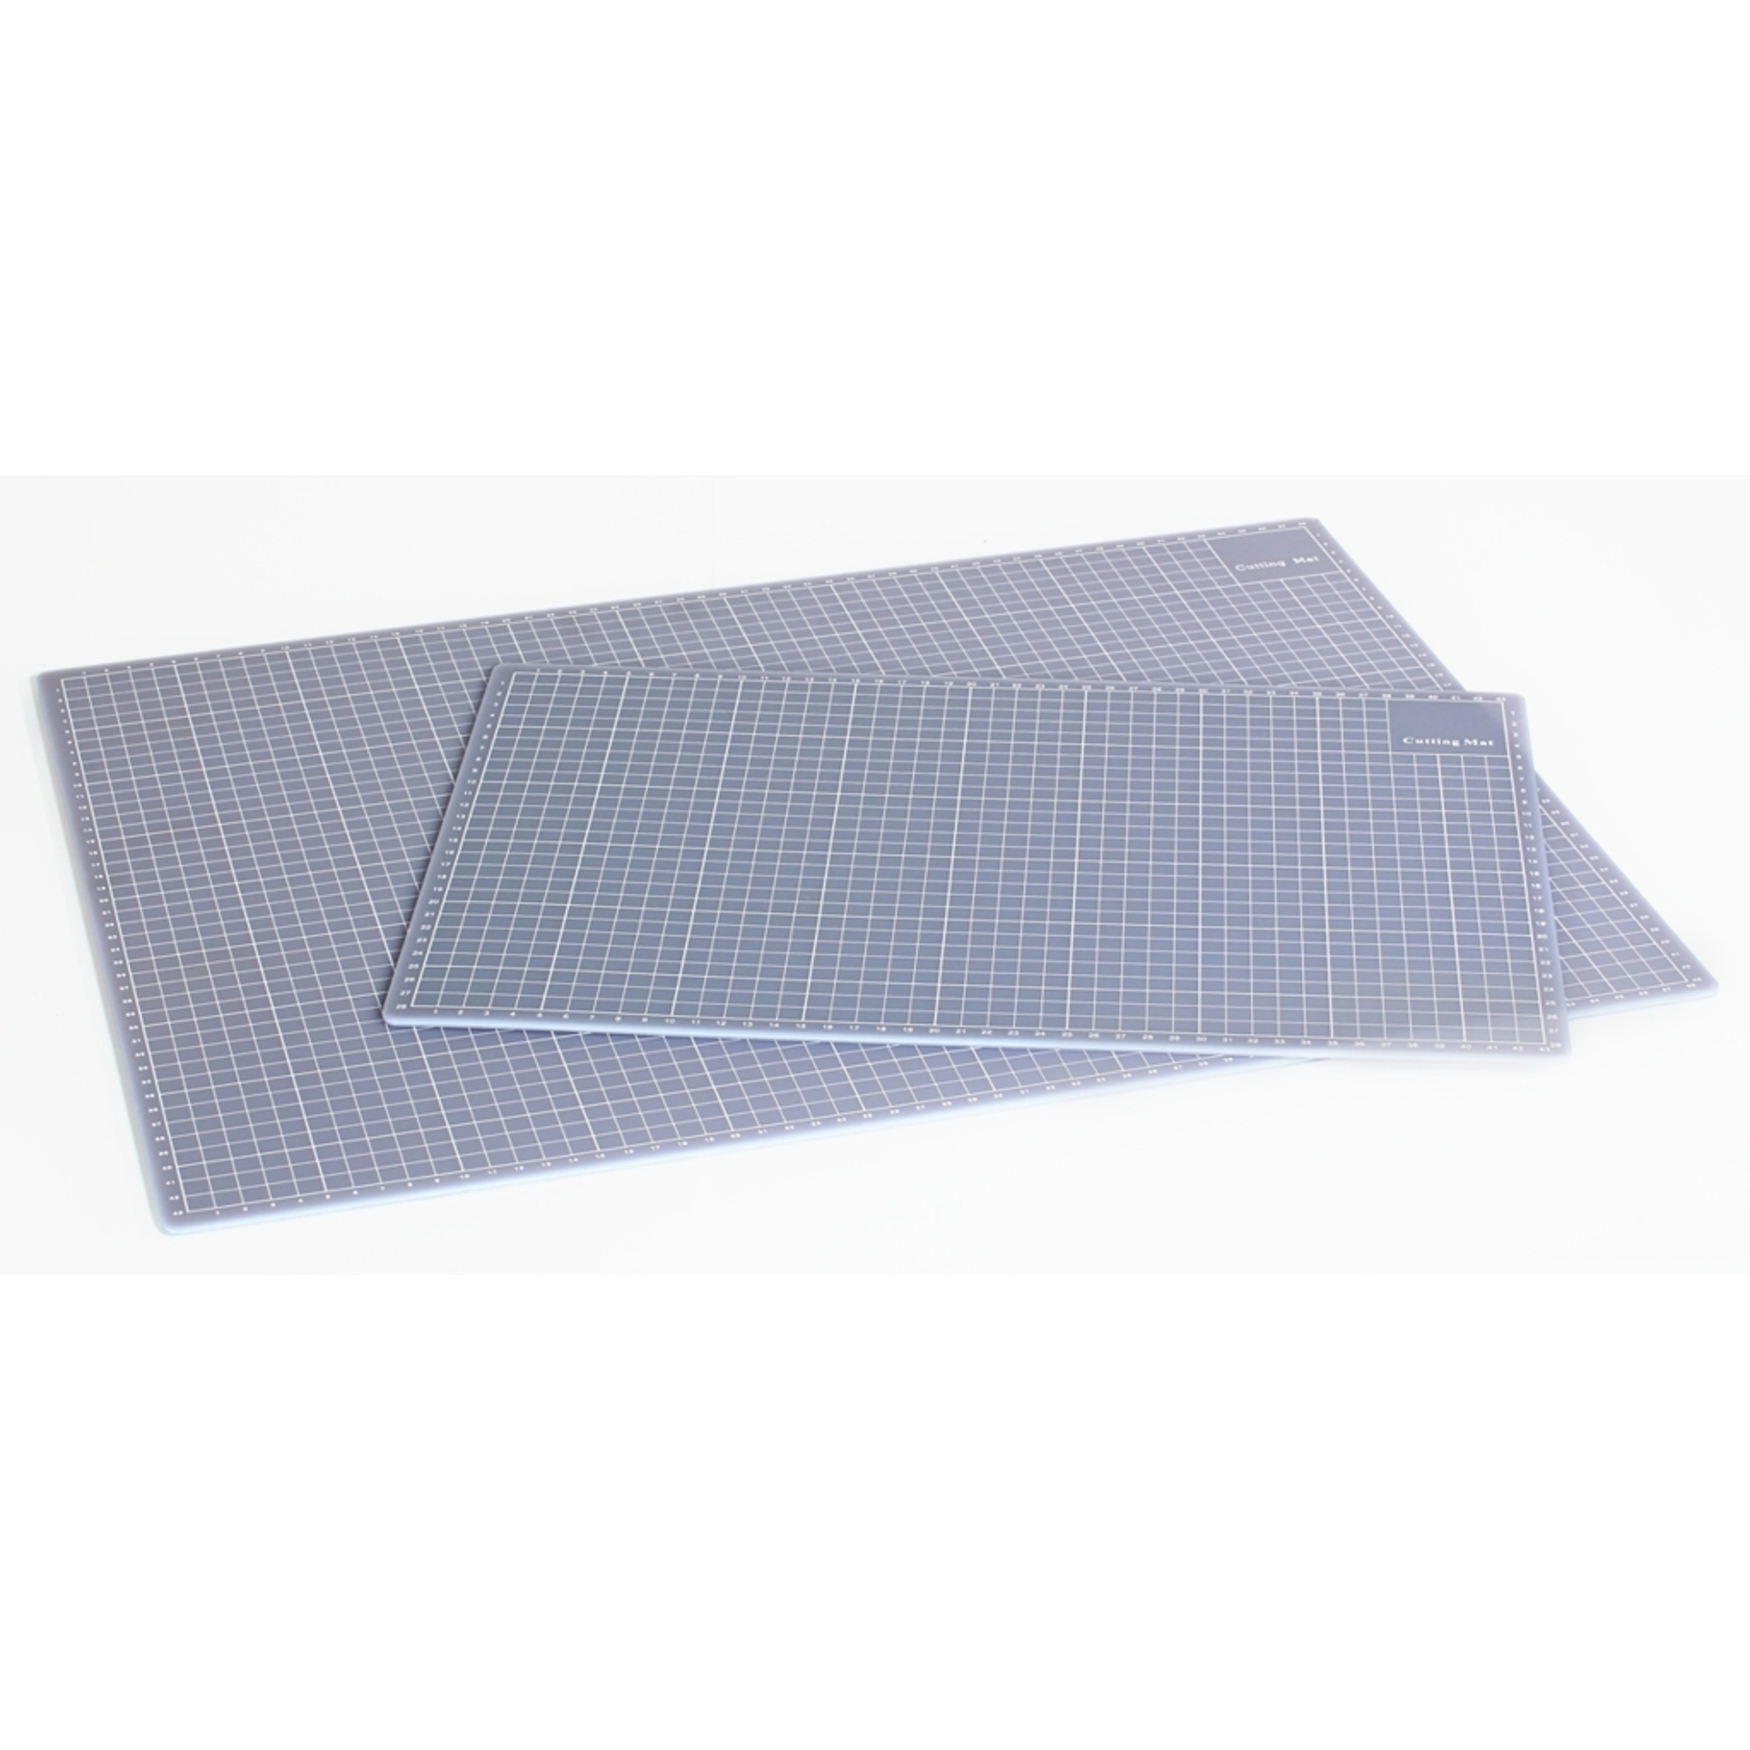 Plotting pads & cutting mats - CUT MAT small cutting matt, 45 x 30cm from  Secabo